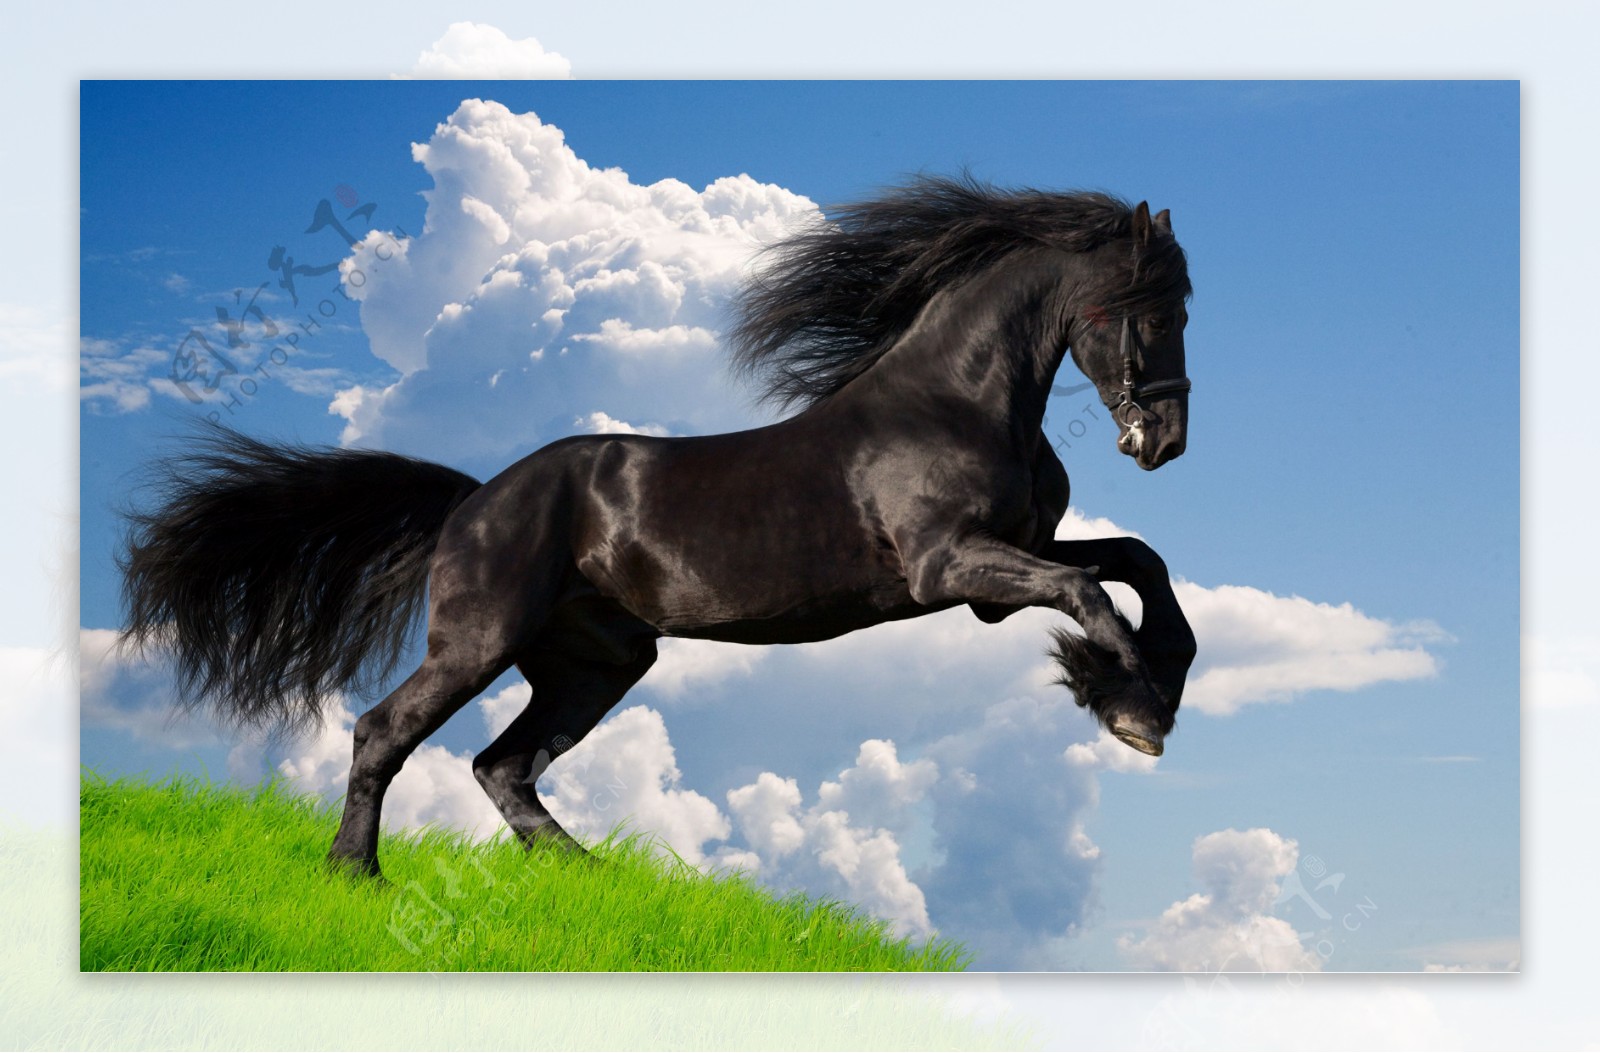 高清飞奔的骏马图片下载高清飞奔的马图片高清动物图片